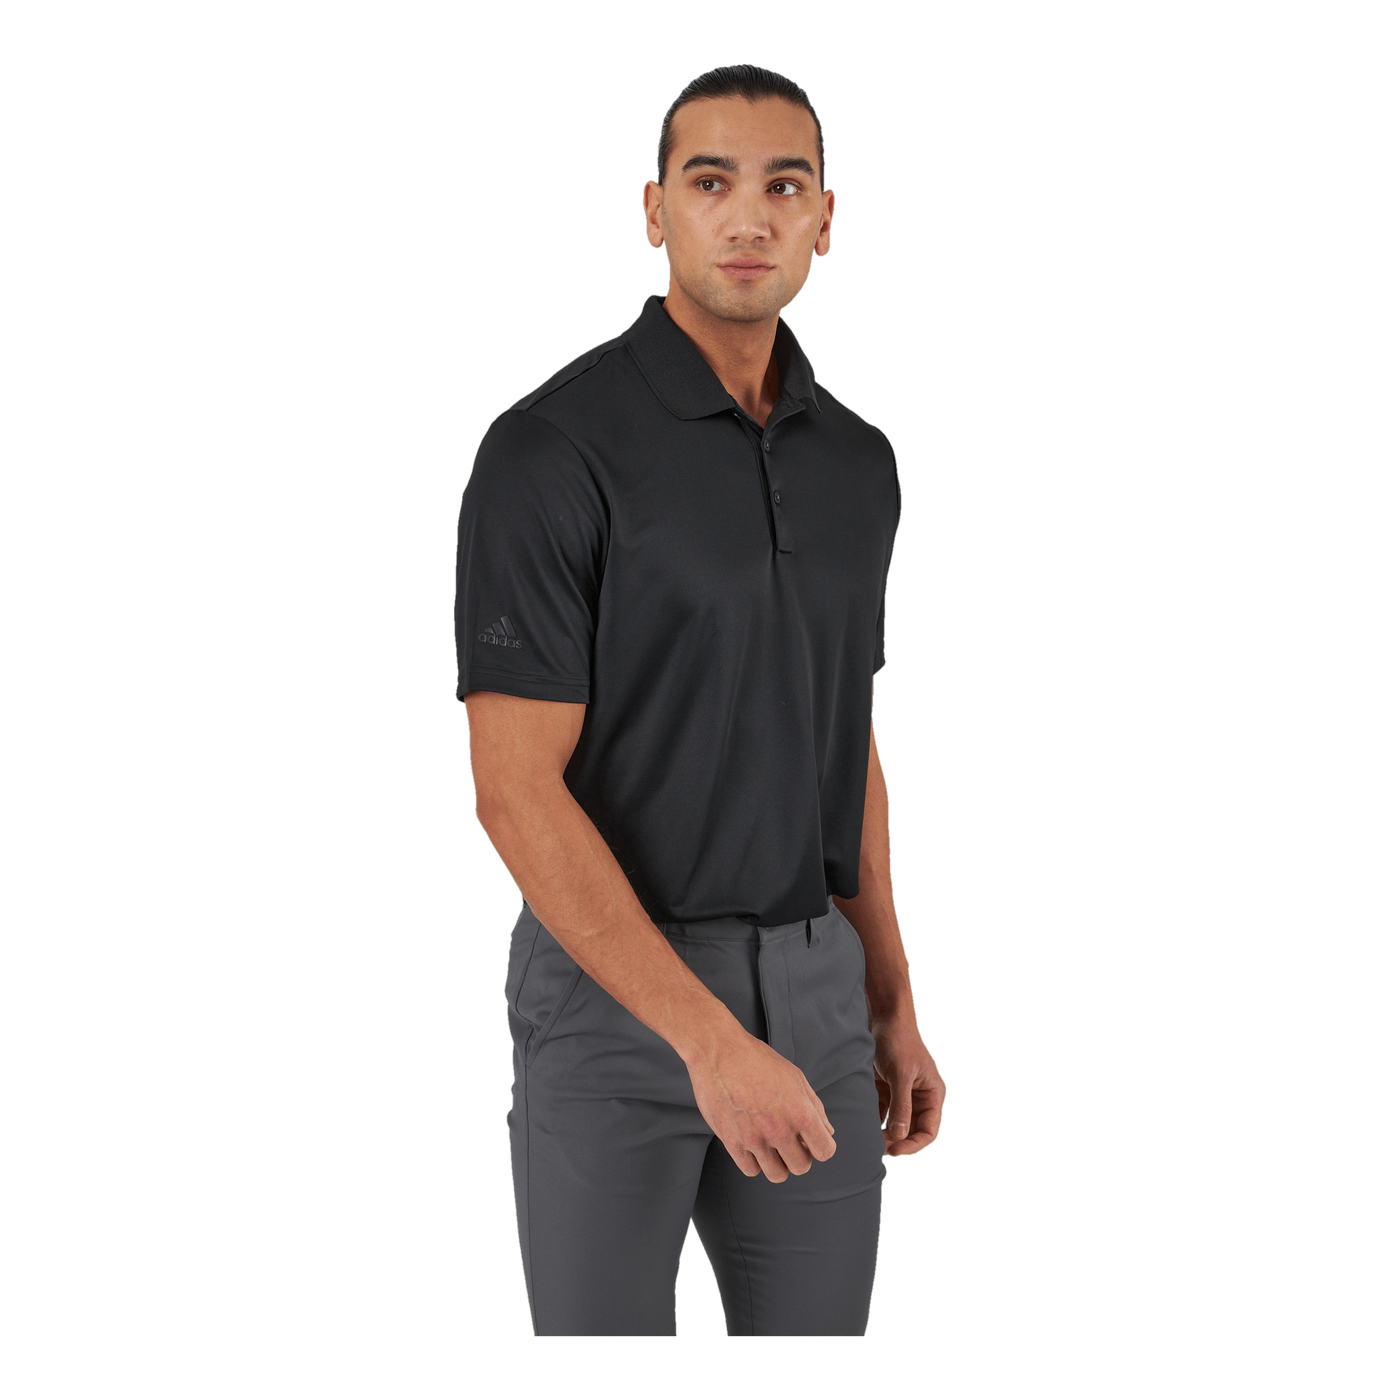 Performance Primegreen Polo Shirt Black